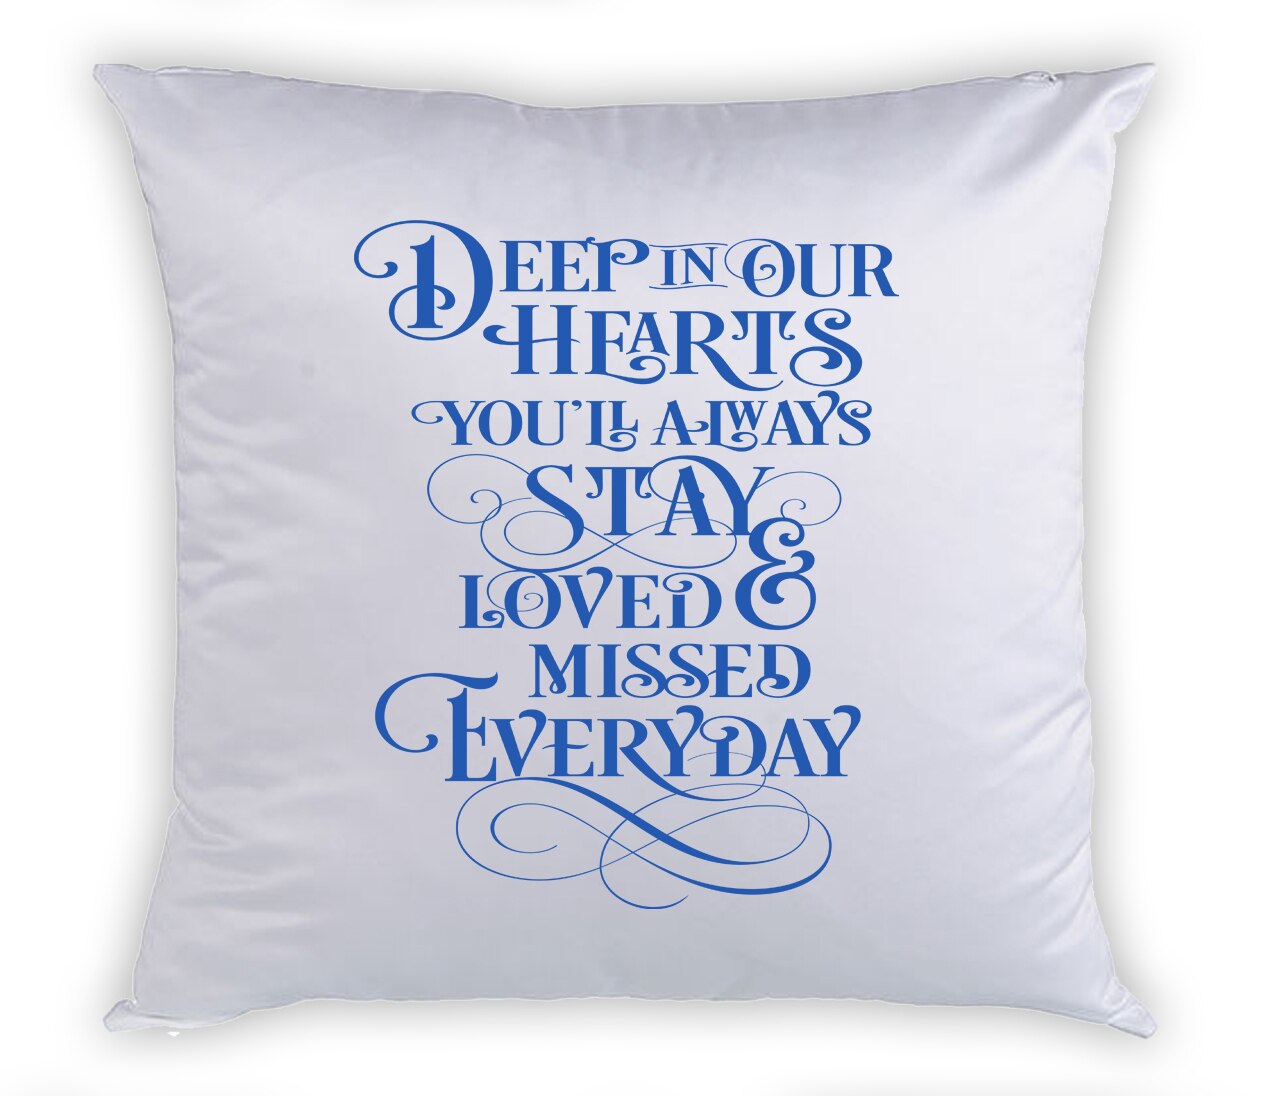 Heavenly Memorial Magic Swipe Reversible Mermaid Sequin Pillow.